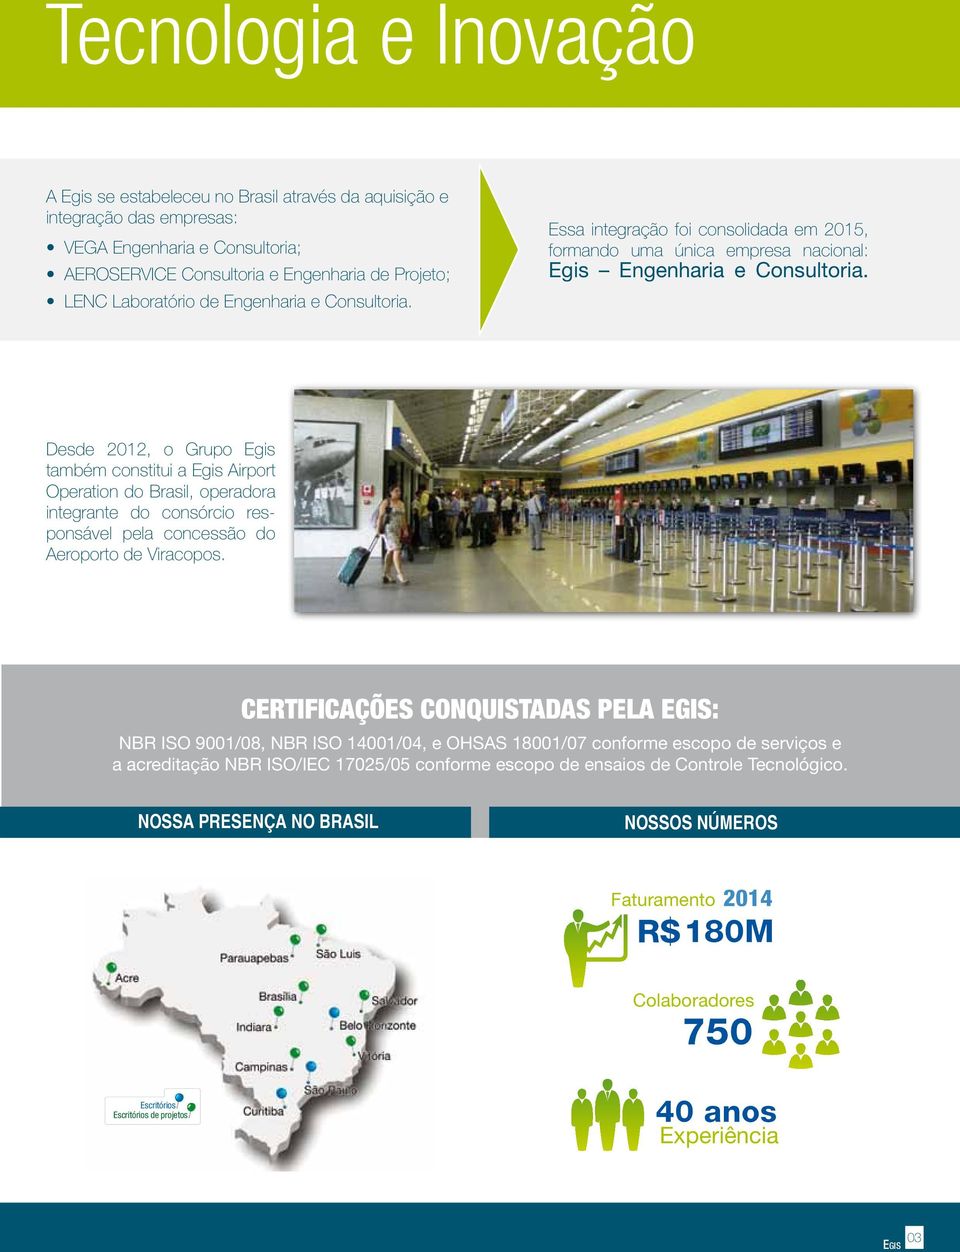 Desde 2012, o Grupo também constitui a Airport Operation do Brasil, operadora integrante do consórcio responsável pela concessão do Aeroporto de Viracopos.